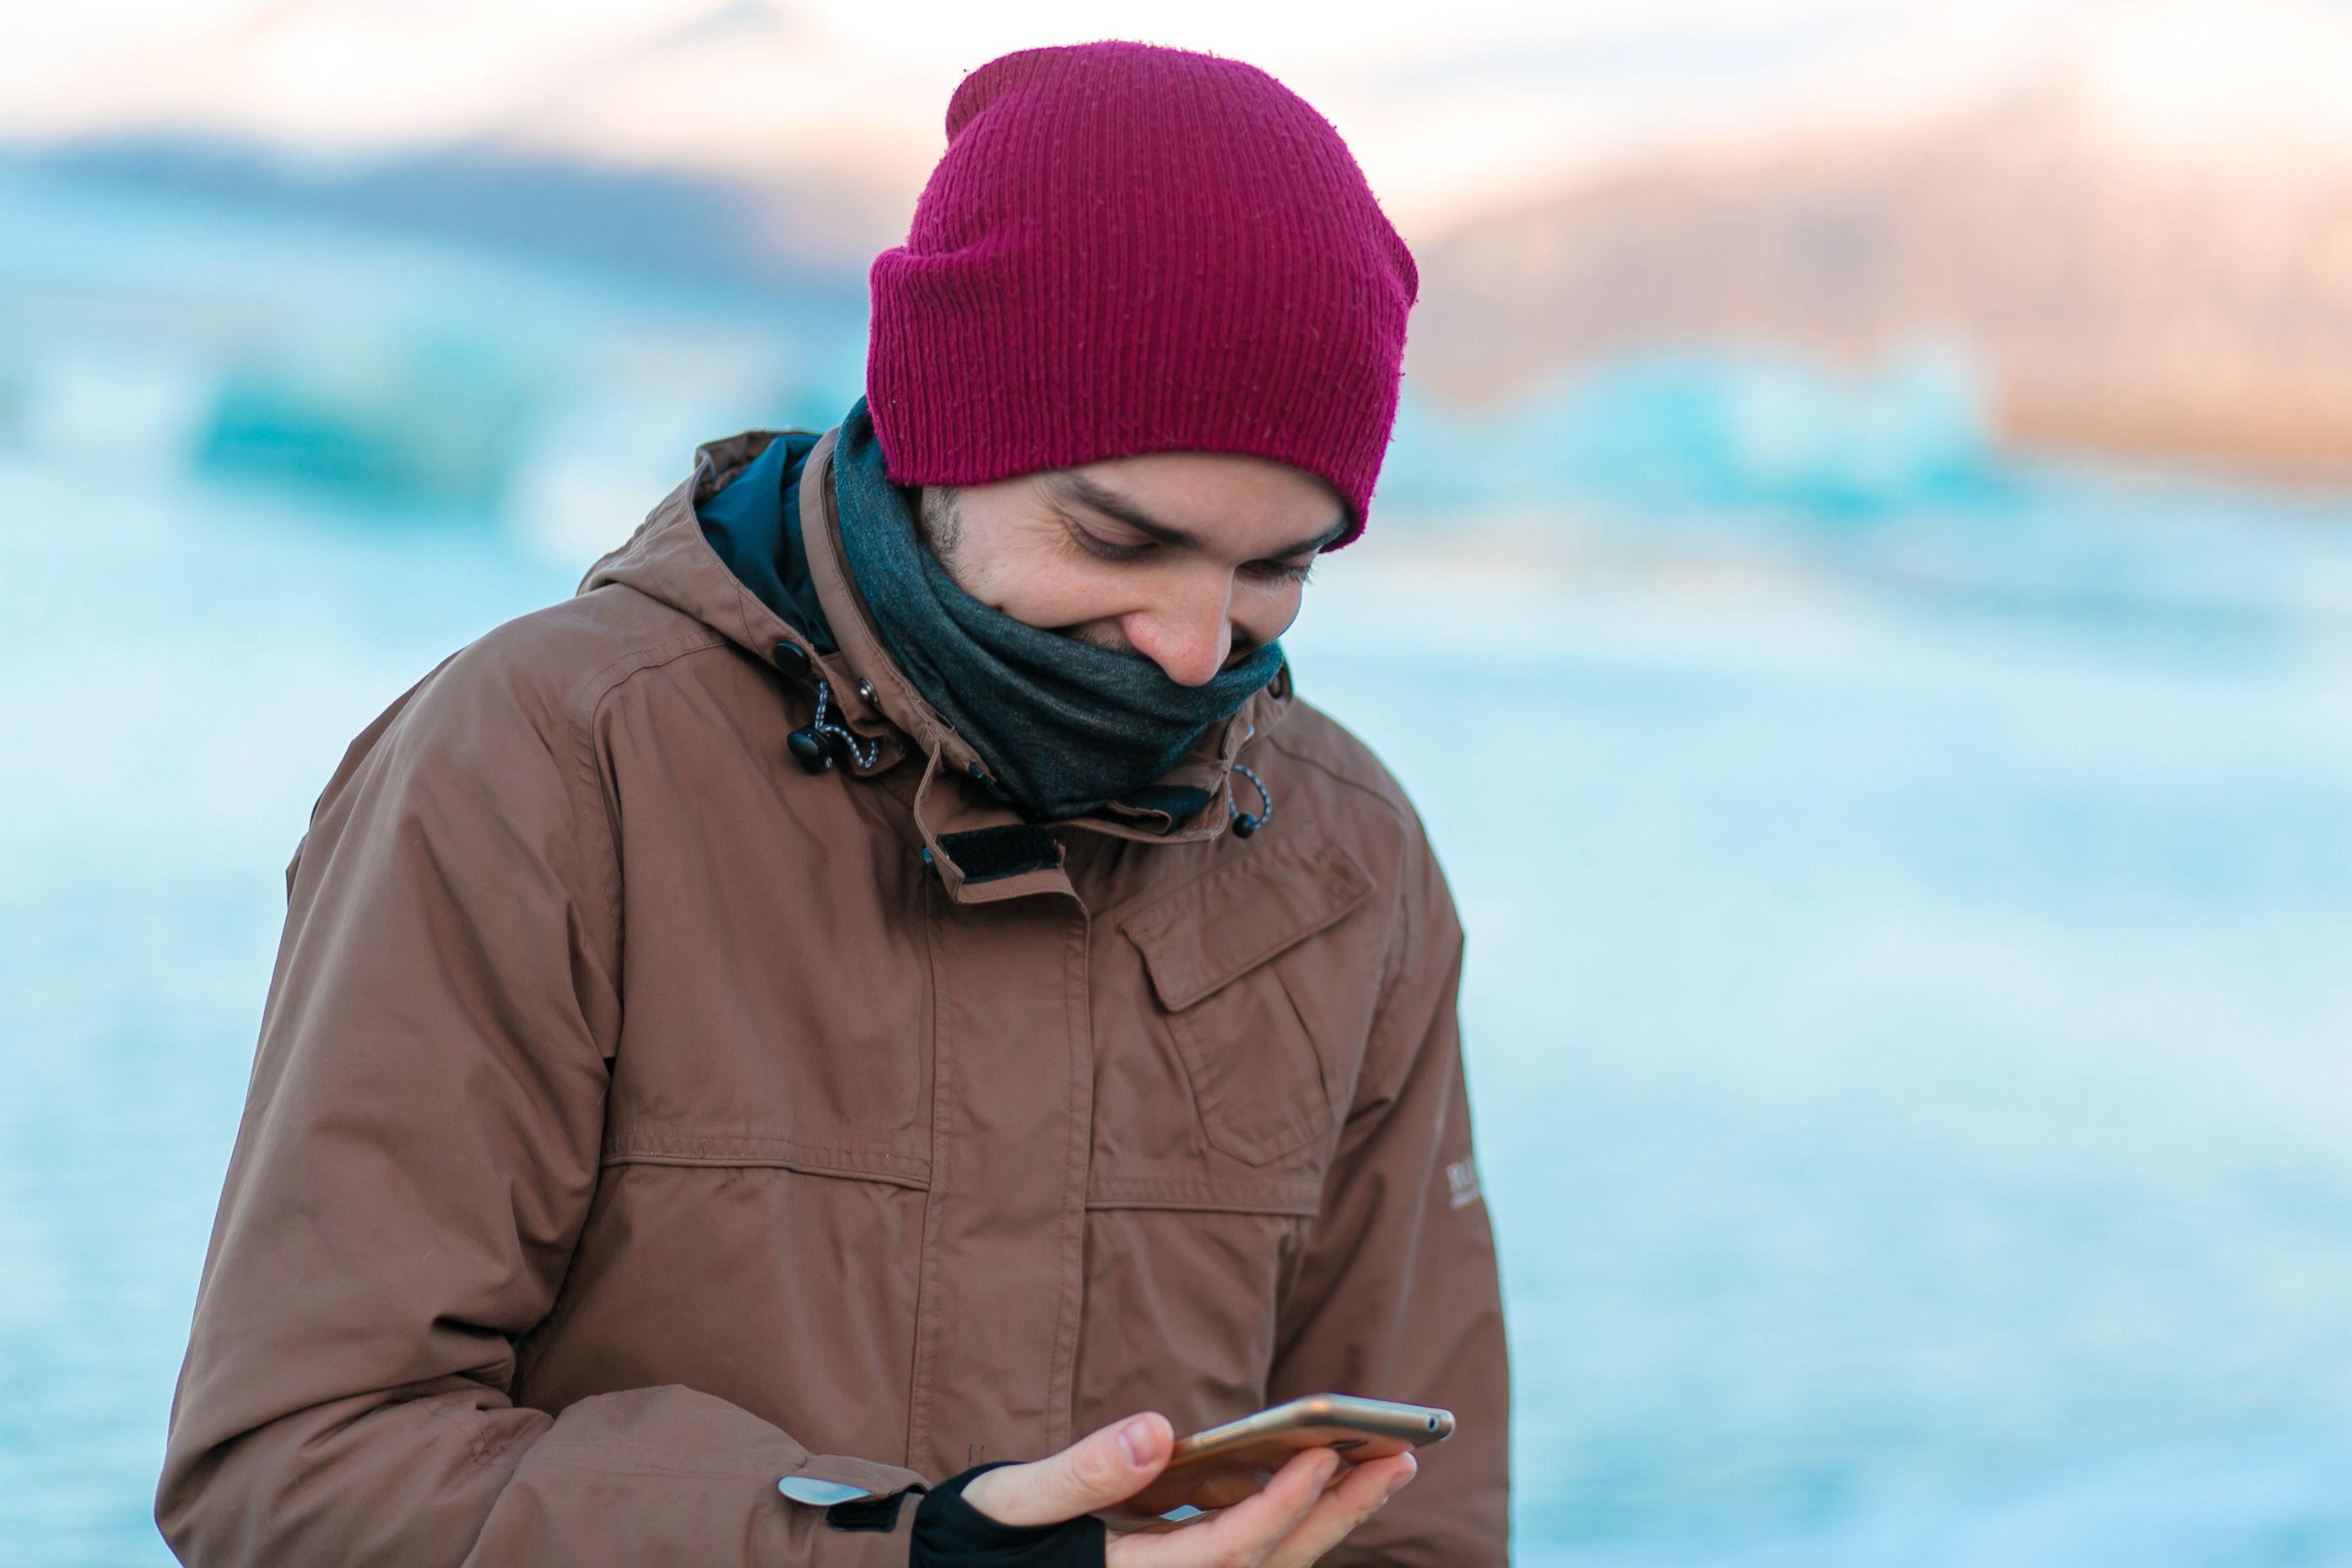 Guy-Touristenspaziergänge im Winter in Island. schaut auf sein Telefon mit geöffneter App.